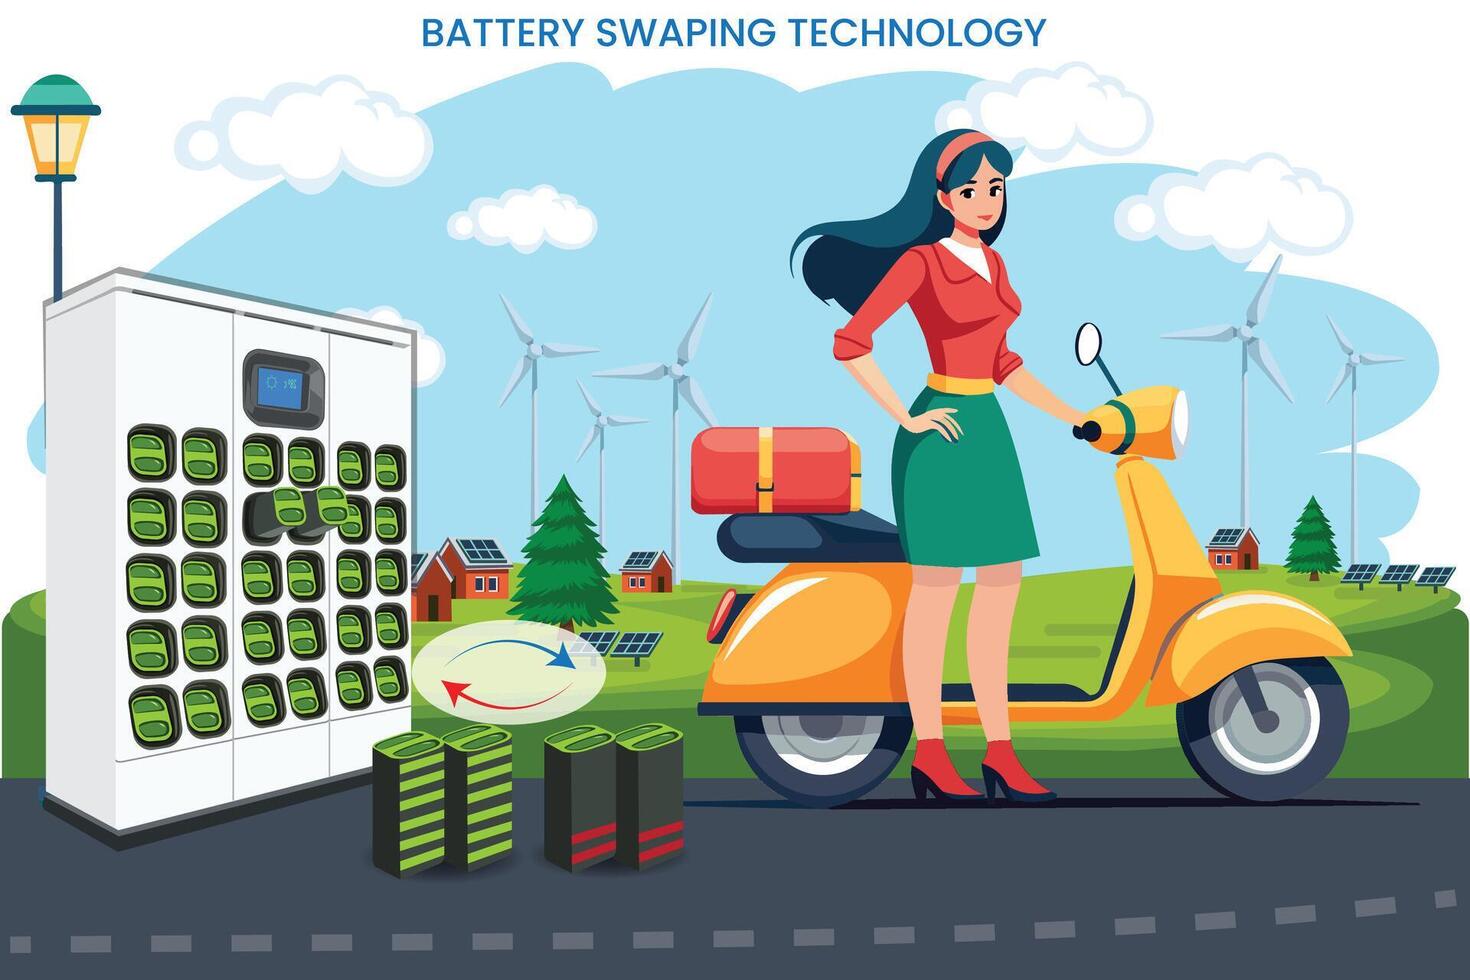 batteri byta teknologi möjliggör e-fordon till utbyta utarmat batterier för fullt laddad de vektor